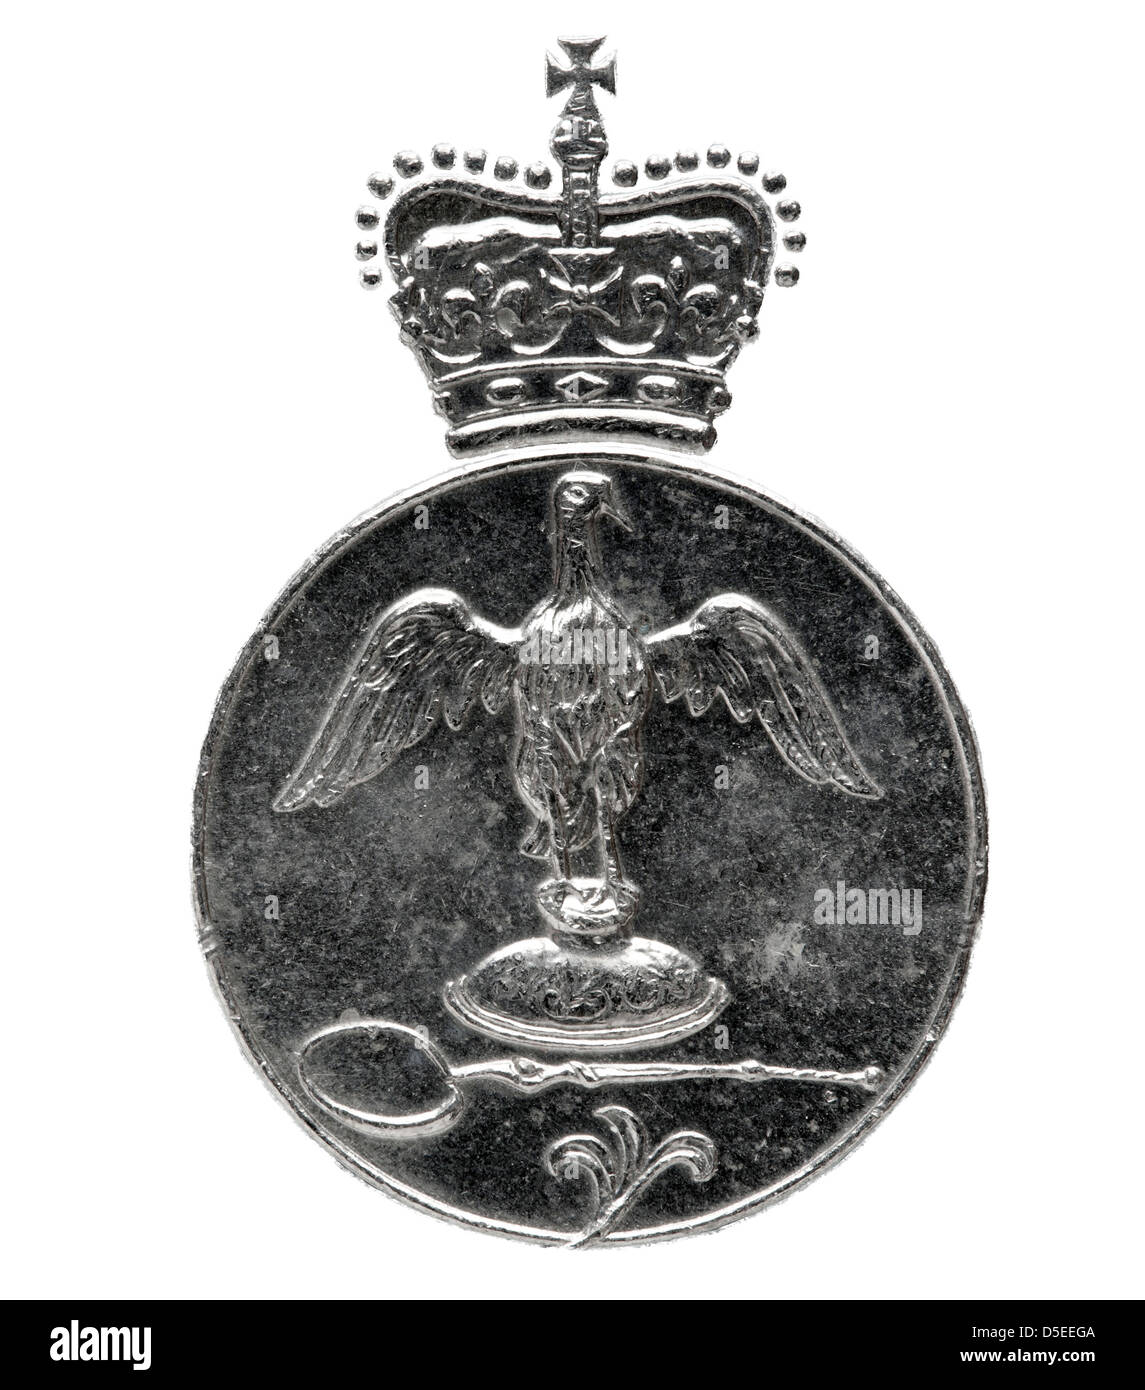 Eagle avec couronne de 25 nouveaux pence coins, Jubilé d'argent de la reine Elizabeth II, UK, 1977, sur fond blanc Banque D'Images